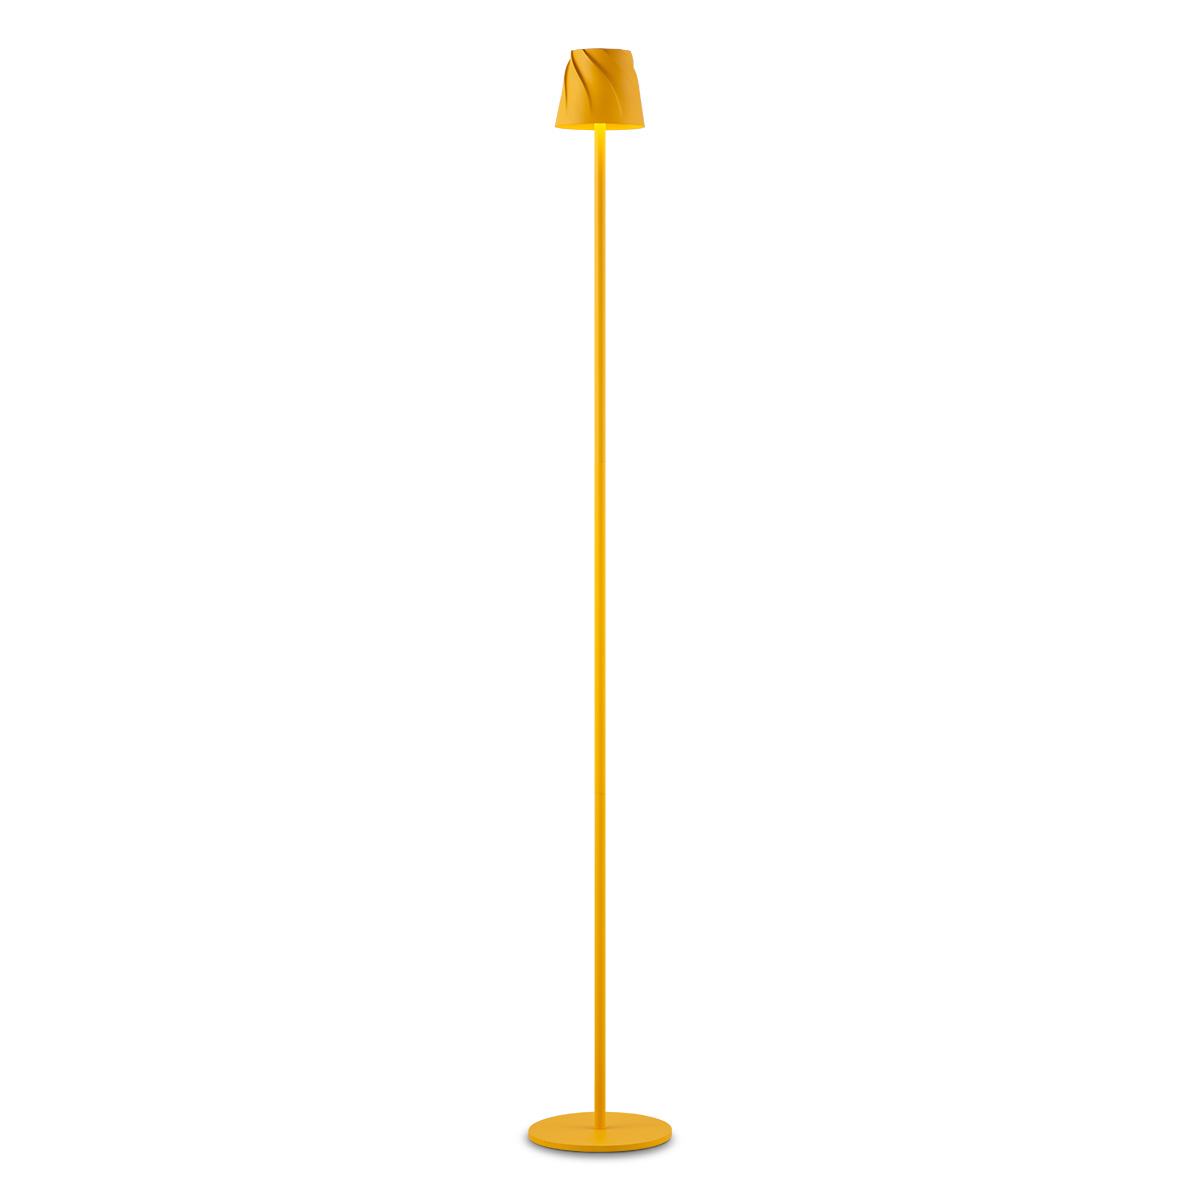 Tangla lighting - TLF7634-01YL - LED floor lamp - rechargeable plastic - yellow - whirl